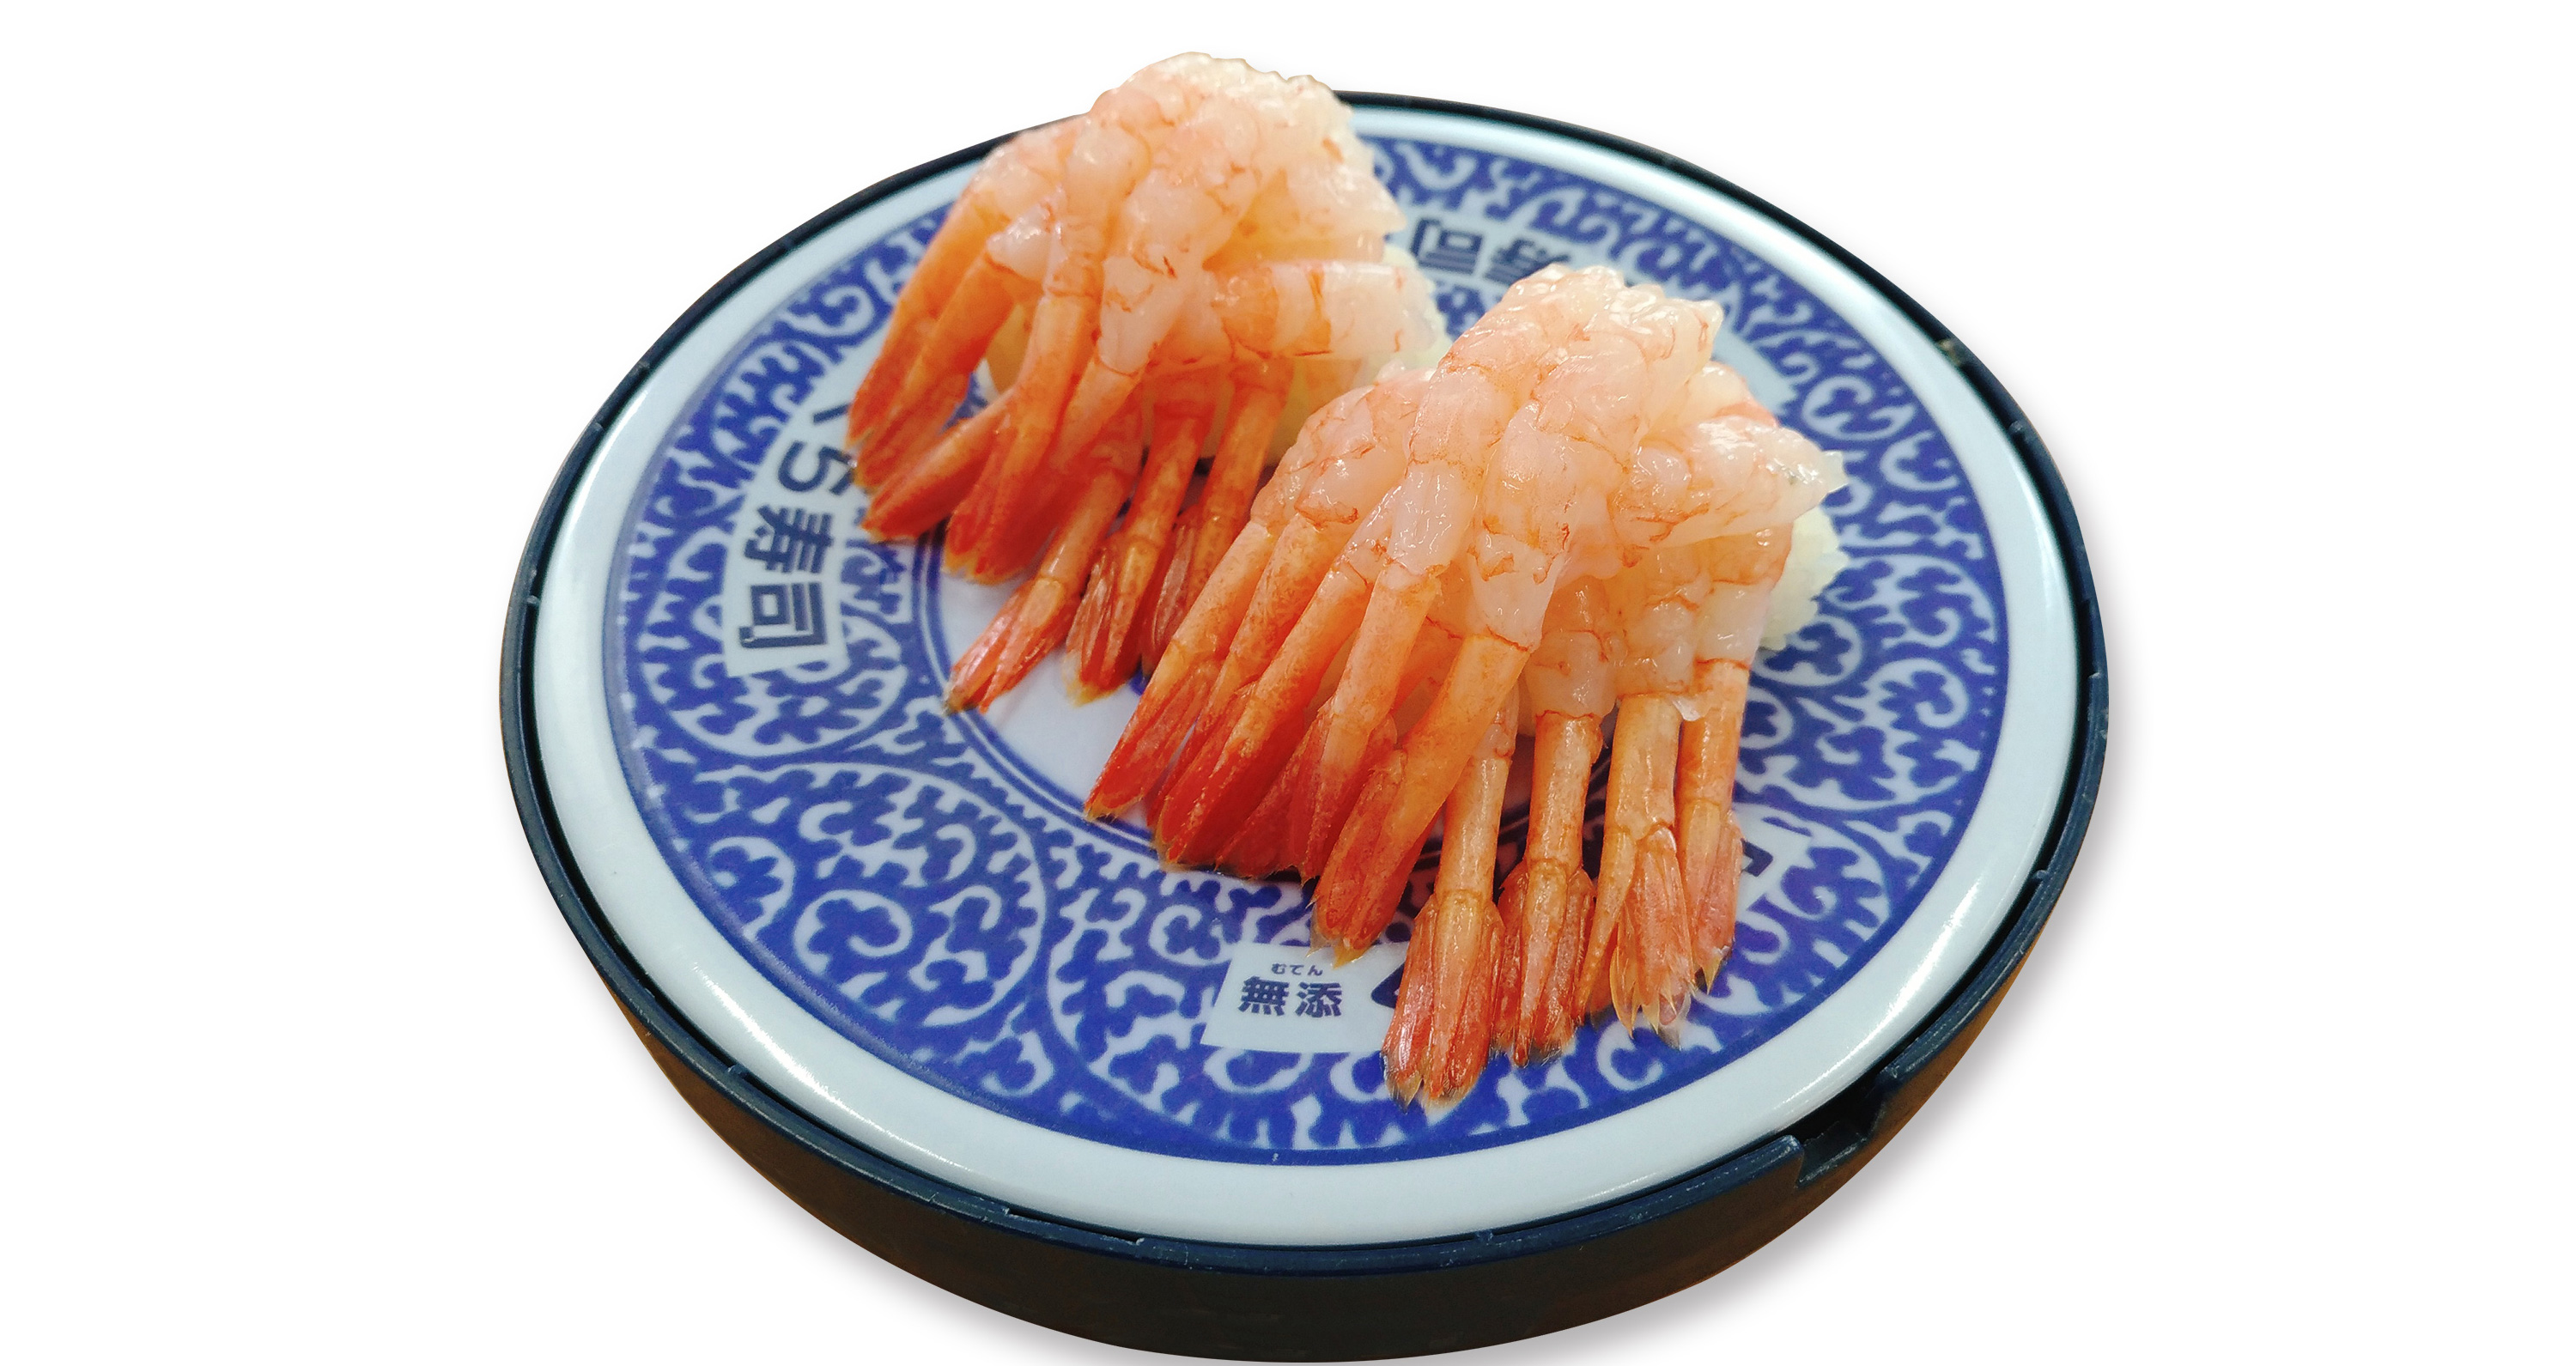 てんこ盛りじゃないか 笑 くら寿司の G大阪サミット 開催記念メニューがなかなかやらかしてるぞ 19年6月27日 エキサイトニュース